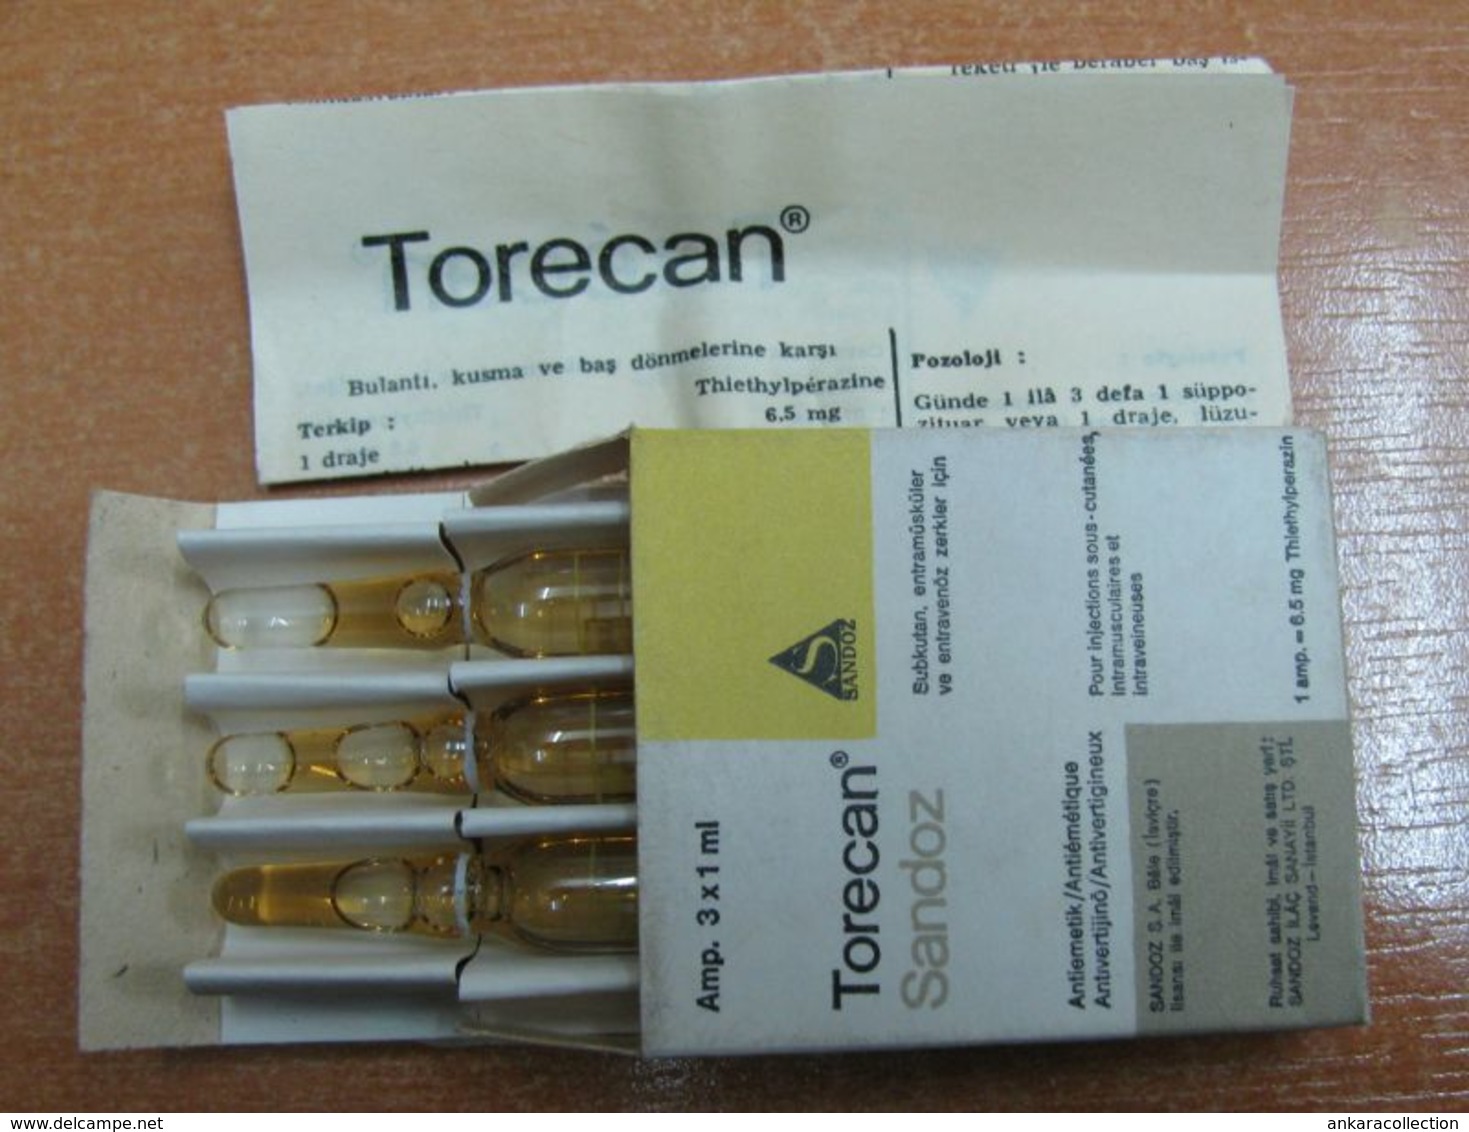 AC - TORECAN SANDOZ 3 AMPOLUES IT IS FOR COLLECTION NOT USABLE VINTAGE MEDICINE - Attrezzature Mediche E Dentistiche